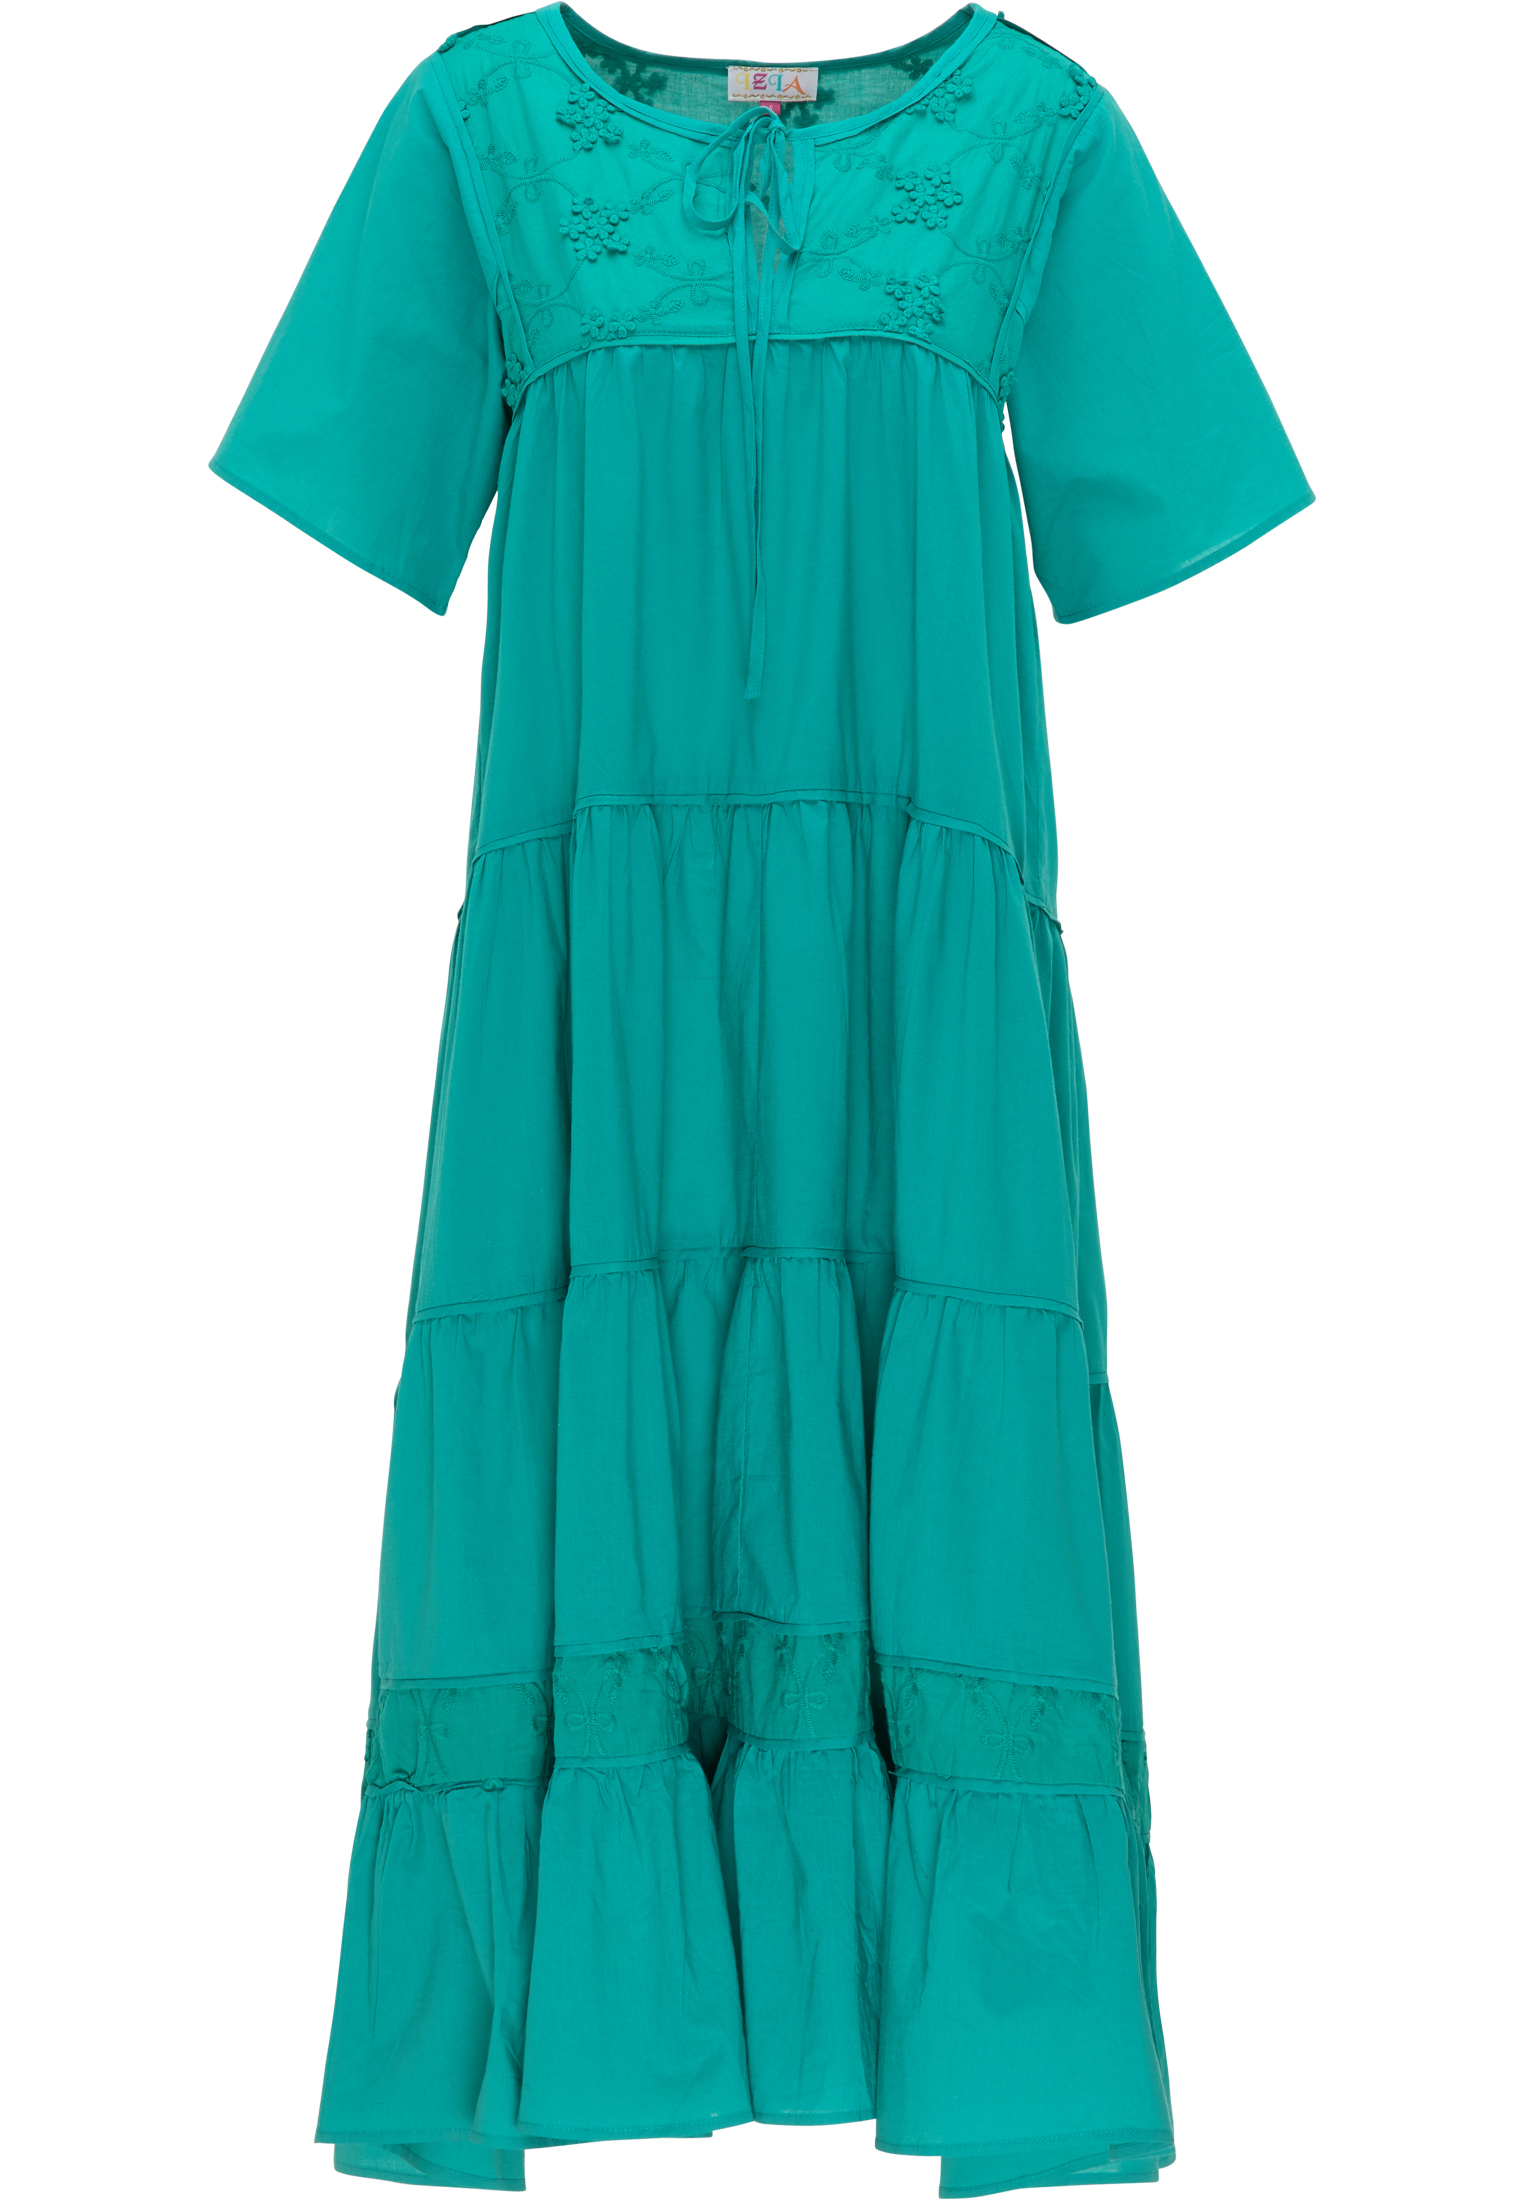 Kobiety Odzież IZIA Letnia sukienka w kolorze Niebieskim 